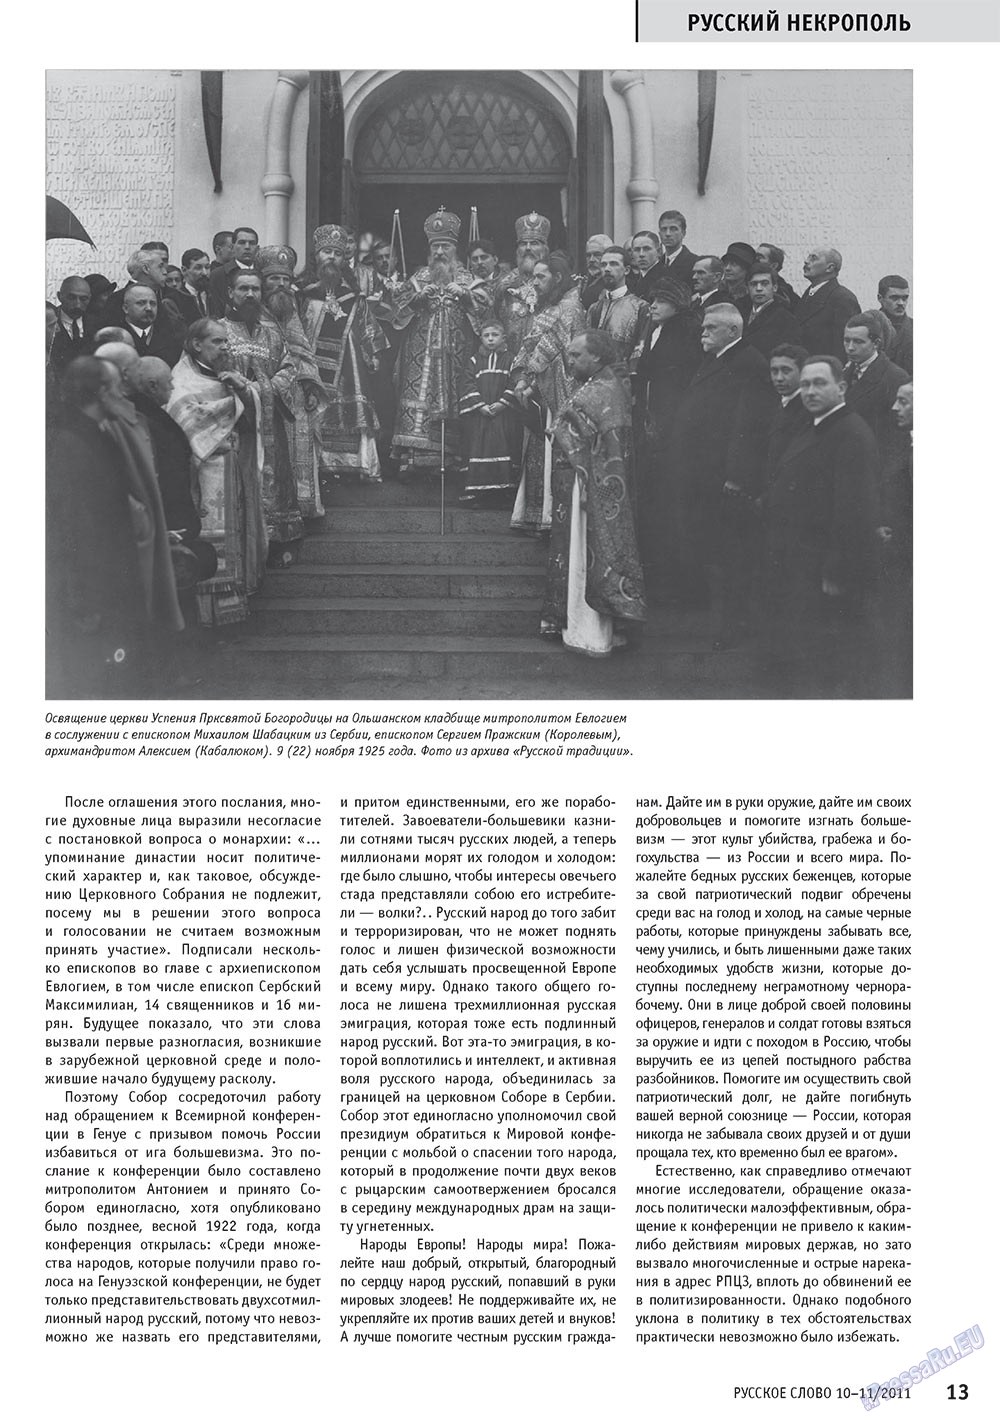 Русское слово, журнал. 2011 №10 стр.15